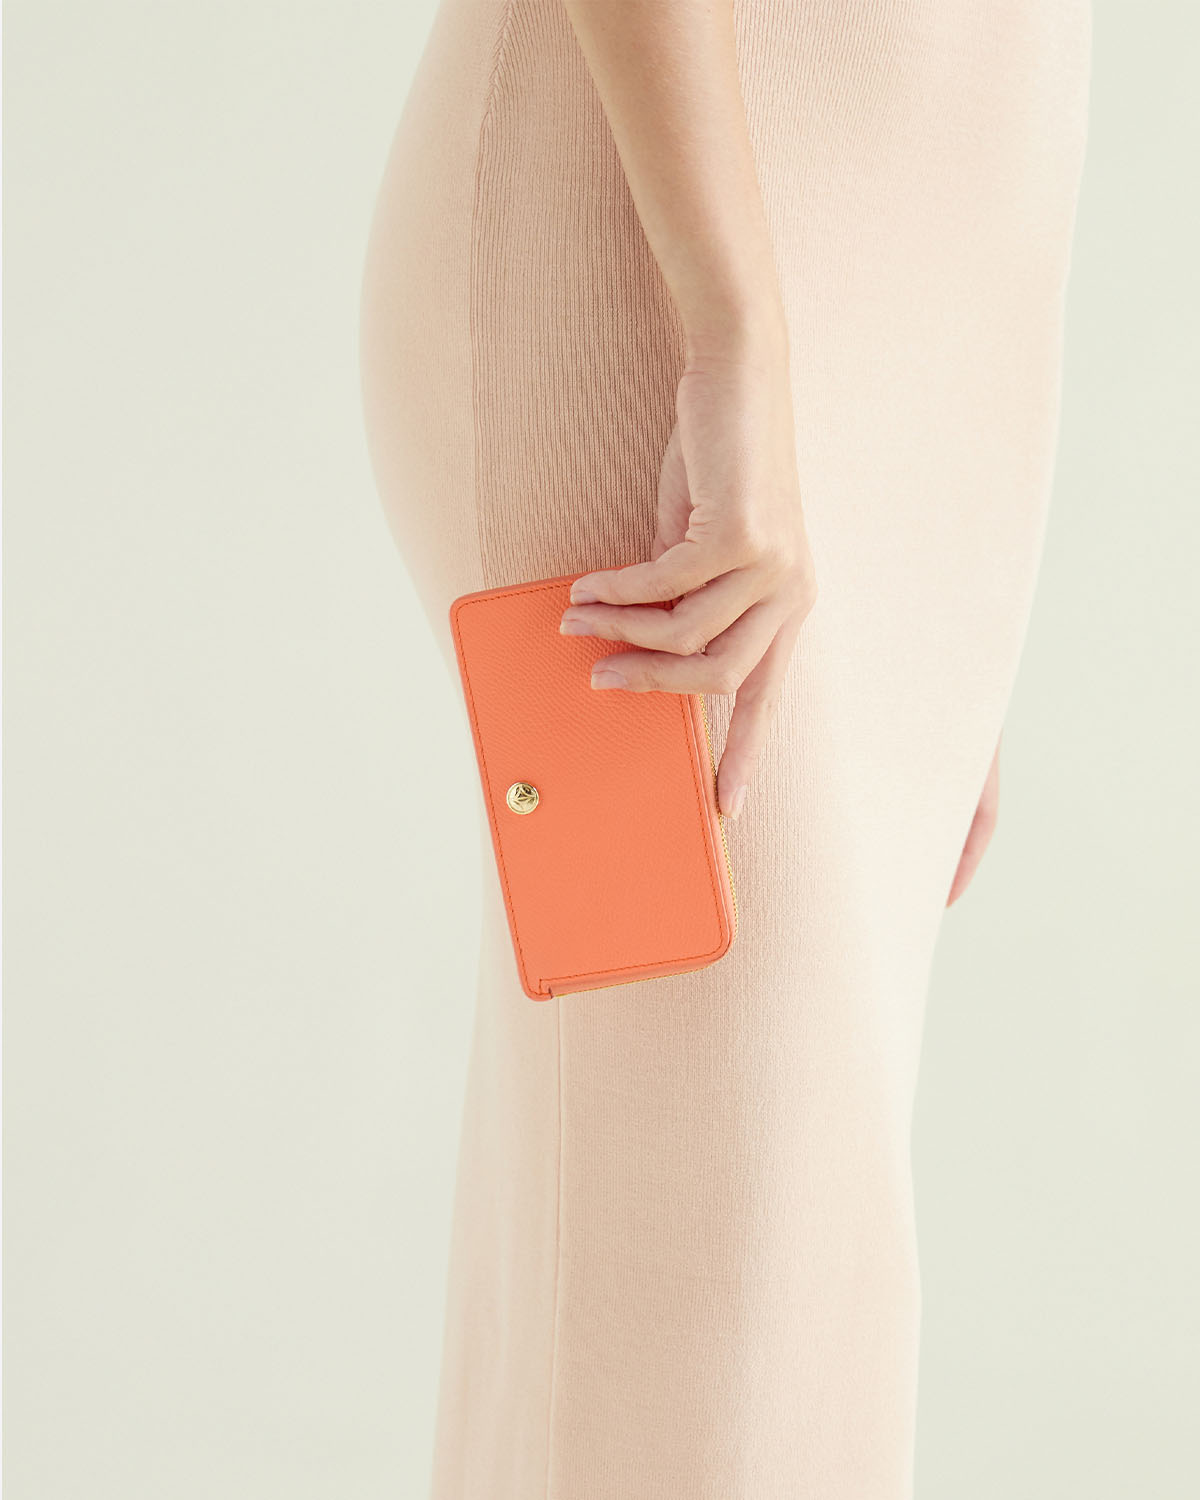 VERA Emily Long Card holder in Joyful Orange กระเป๋าใส่บัตรหนังแท้ ทรงยาว พร้อมช่องซิบ สีส้ม